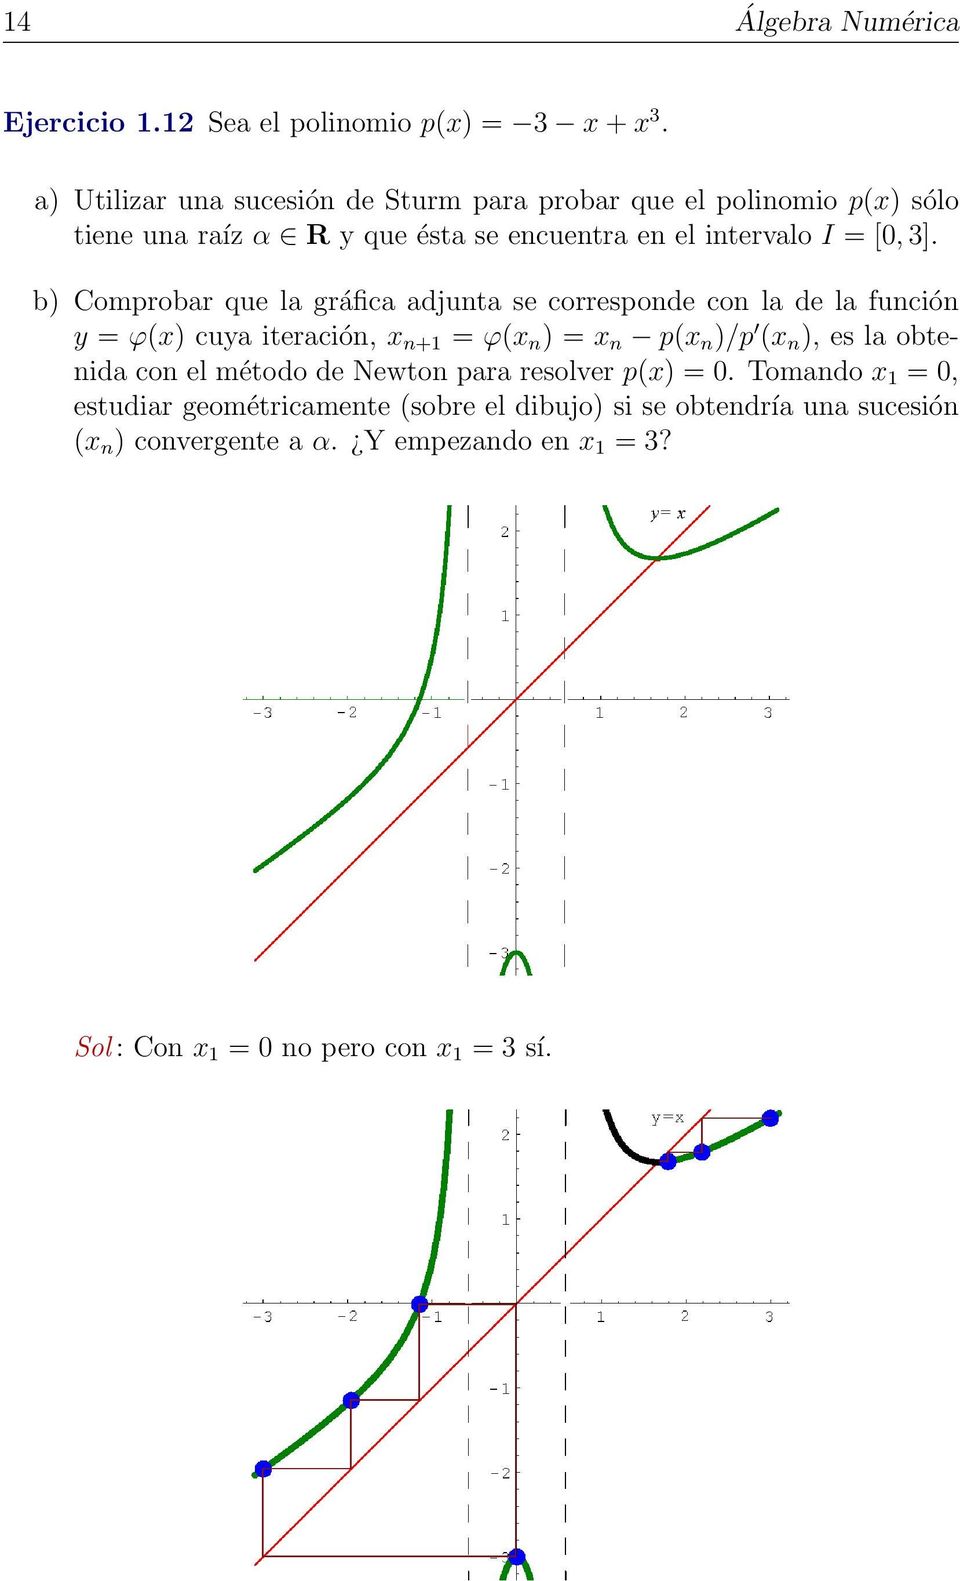 b) Comprobar que la gráfica adjunta se corresponde con la de la función y = ϕ(x) cuya iteración, x n+1 = ϕ(x n ) = x n p(x n )/p (x n ), es la